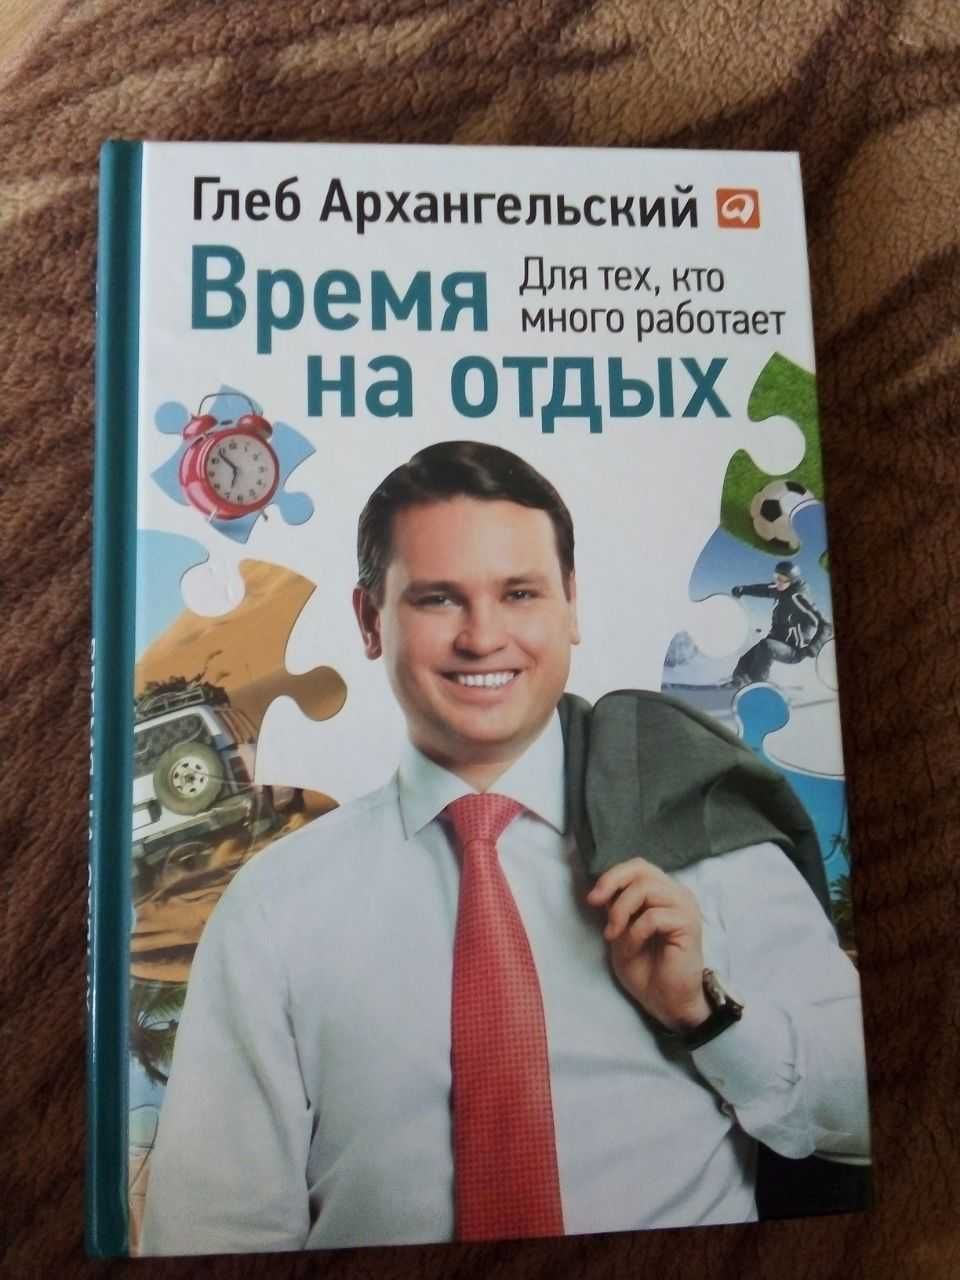 Книга Время на отдых Глеба Архангельского.